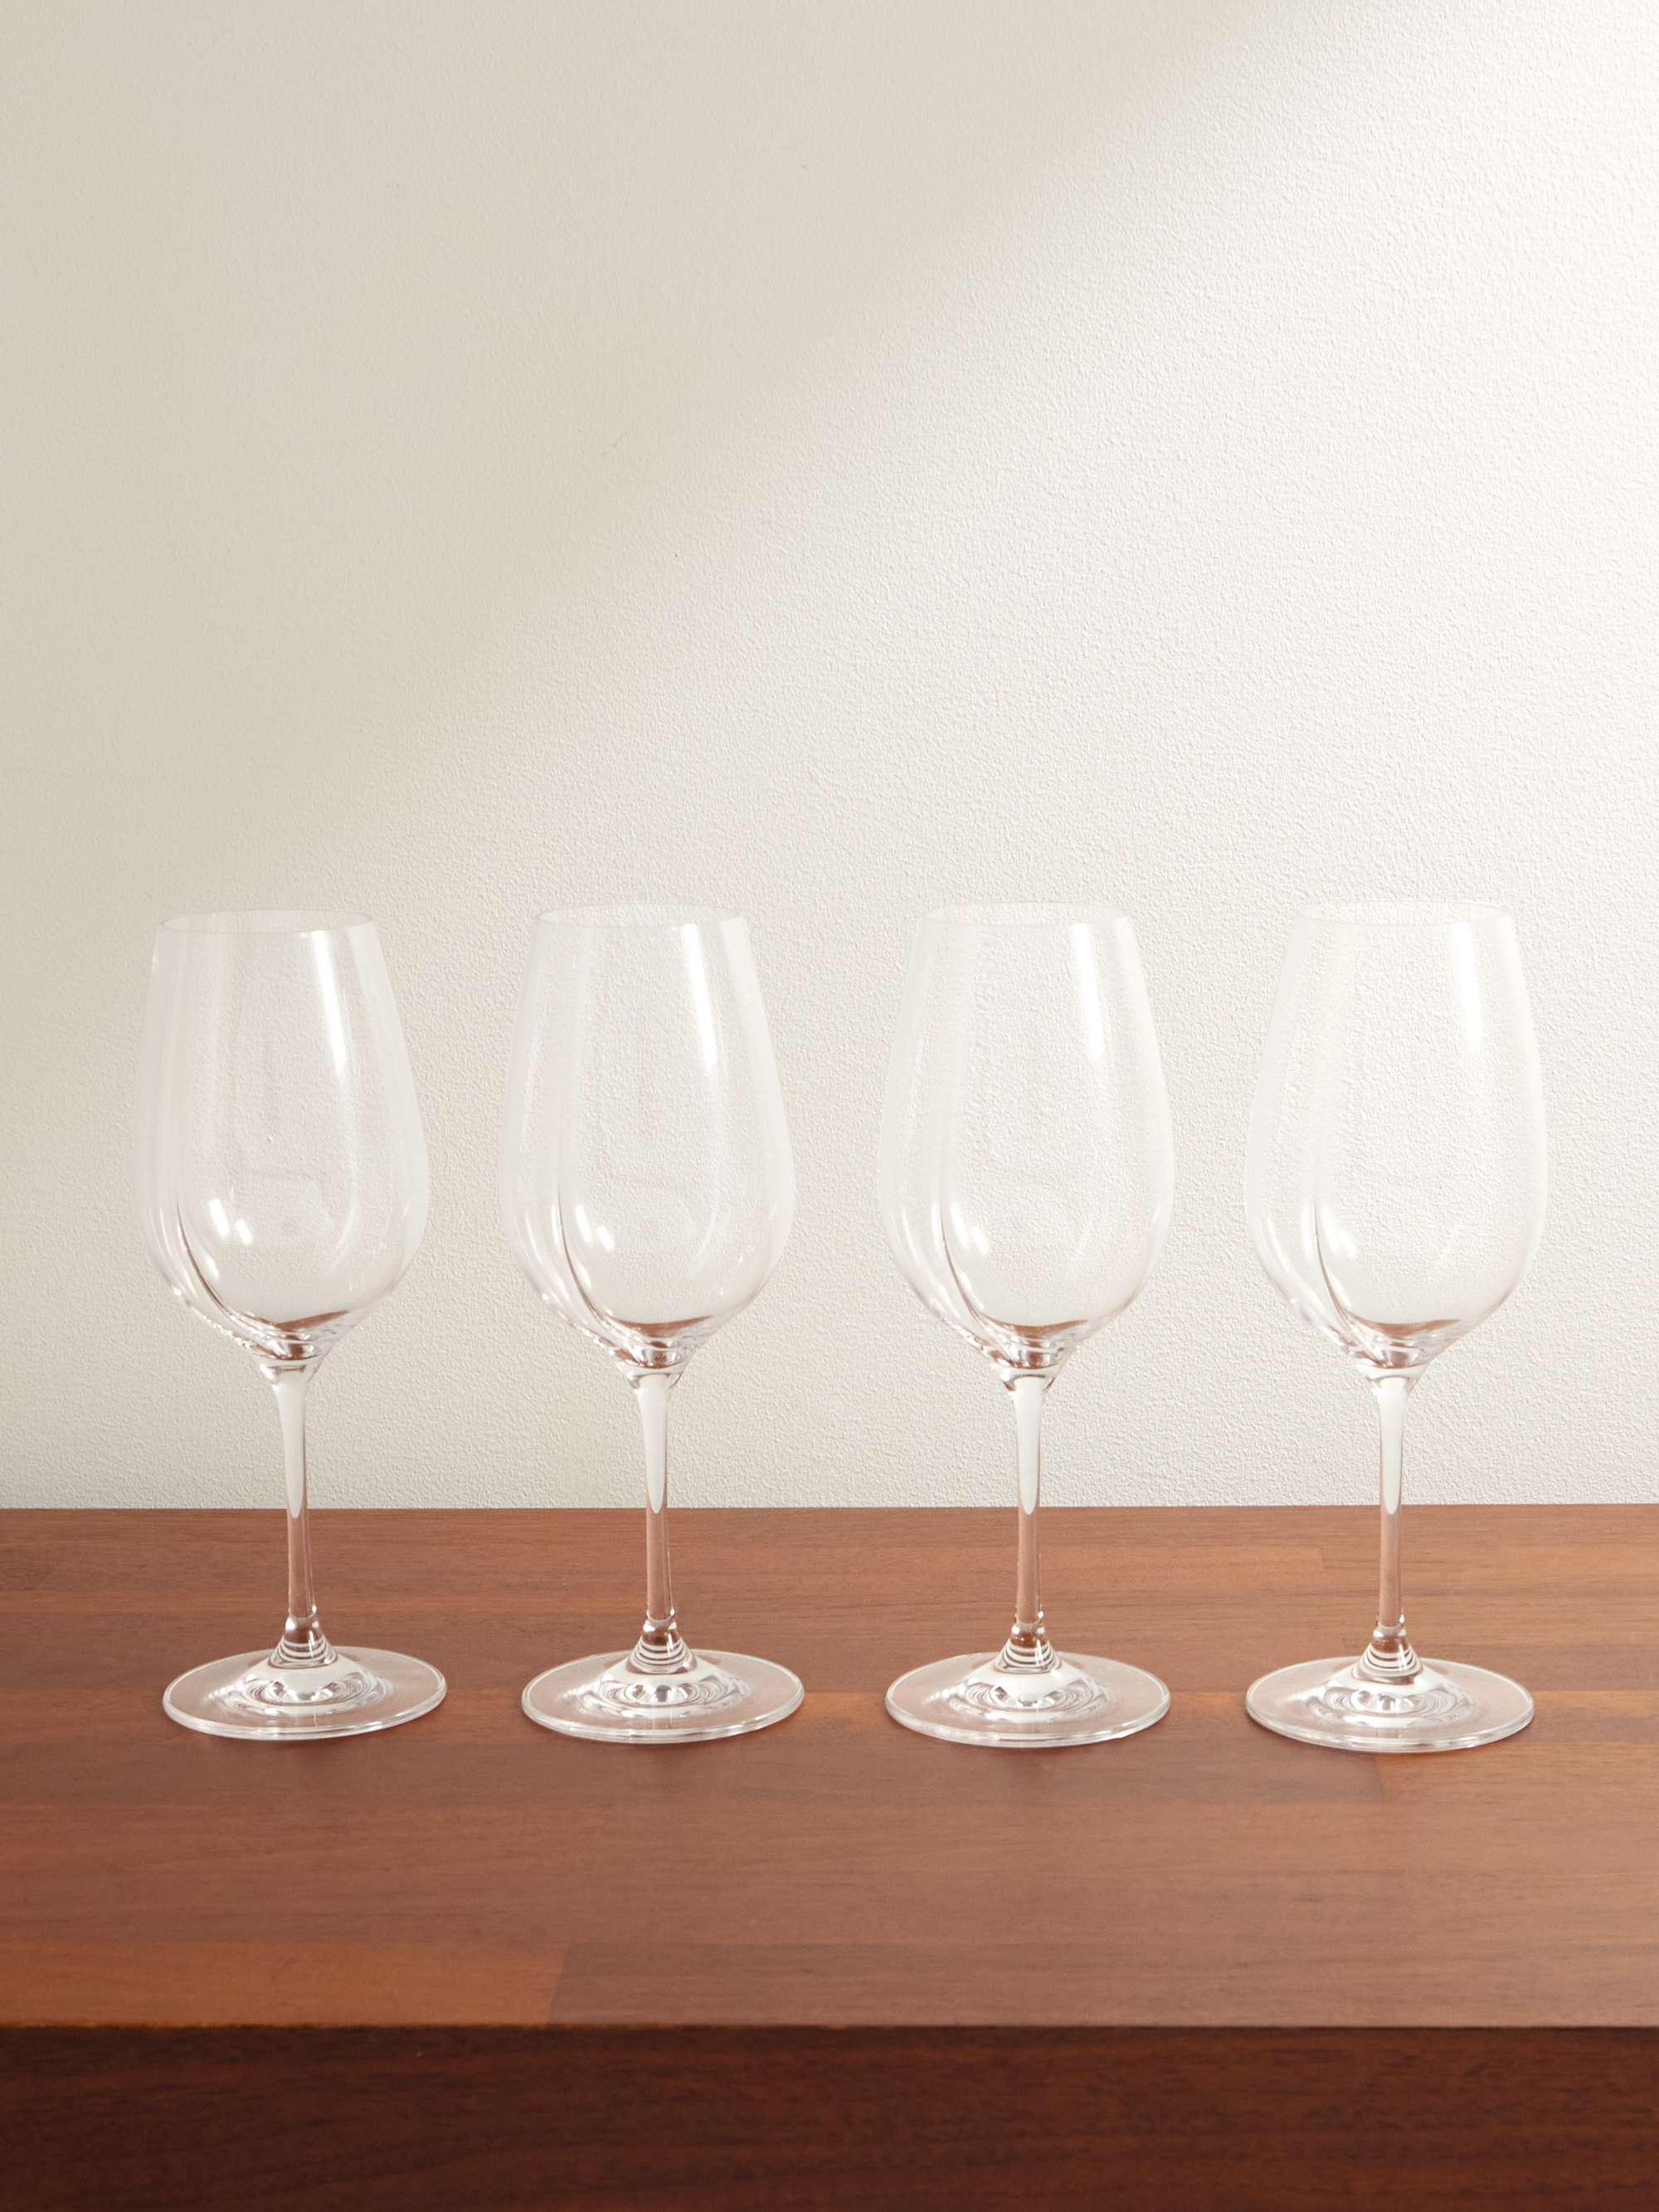 Tuccio Set of Two Wine Glasses